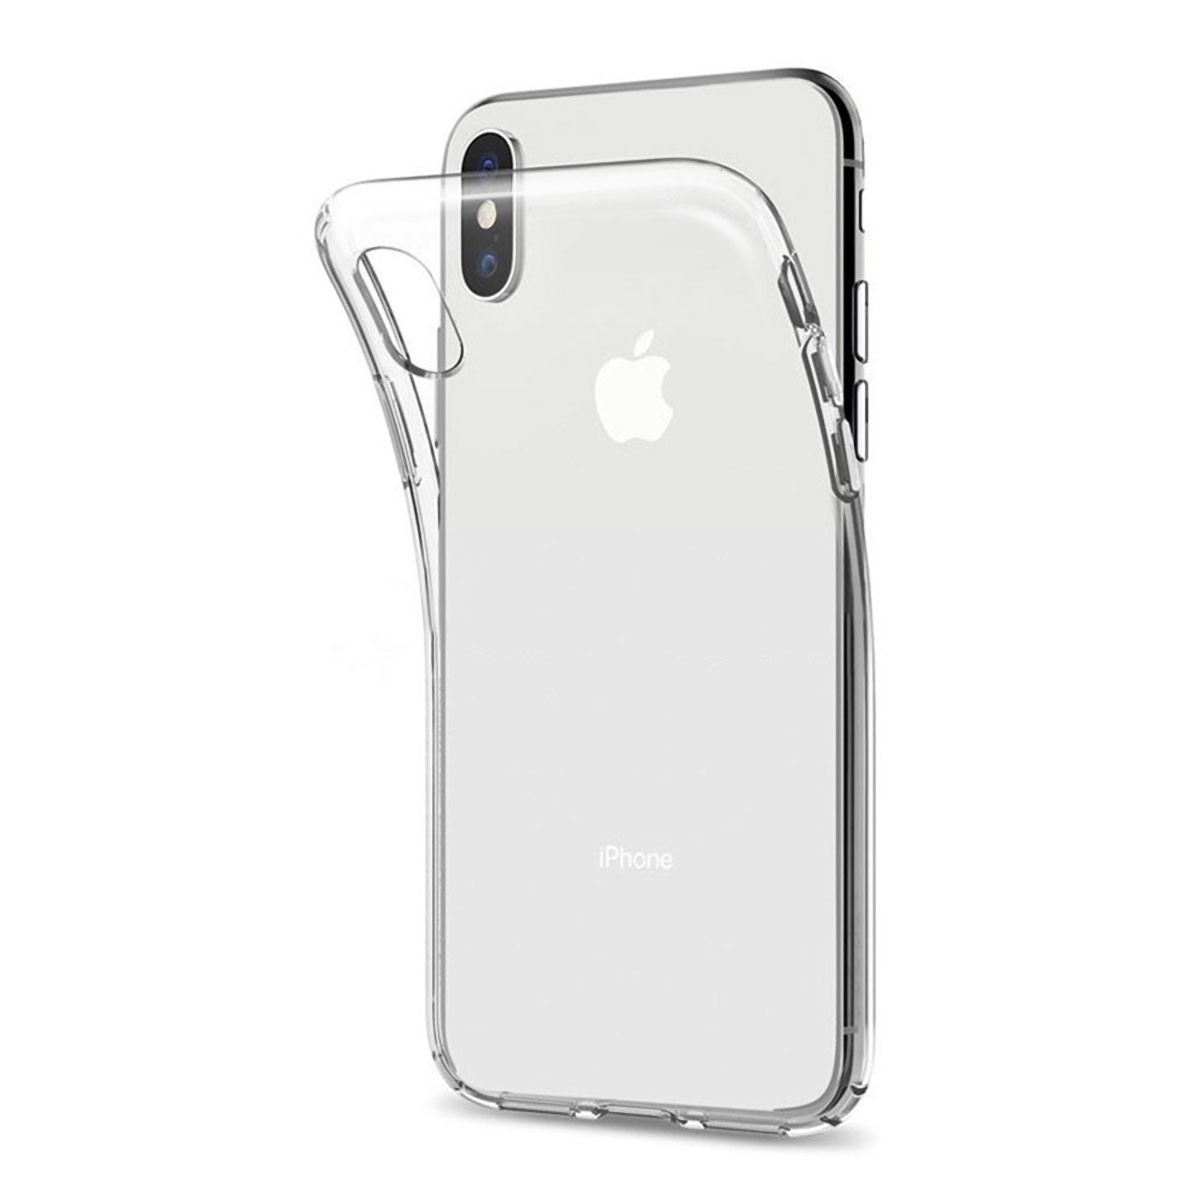 Coque de protection en gel transparent pour iPhone 6, iPhone 6S photo 1